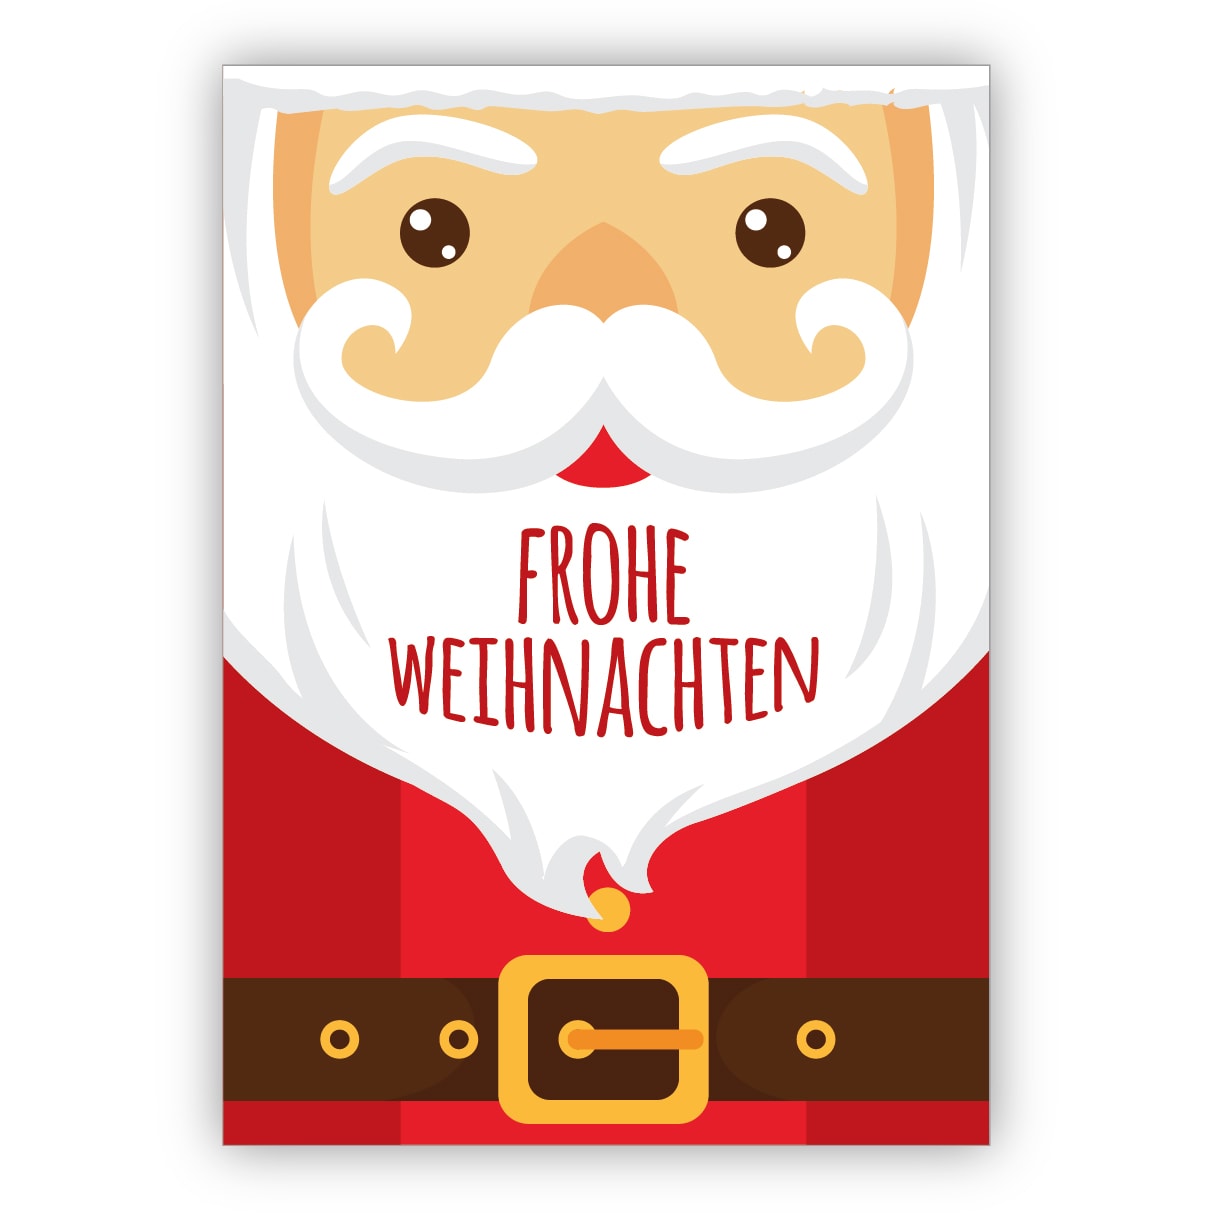 Coole Weihnachtskarte Mit Grossem Weihnachtsmann Frohe Weihnachten Kartenkaufrausch De